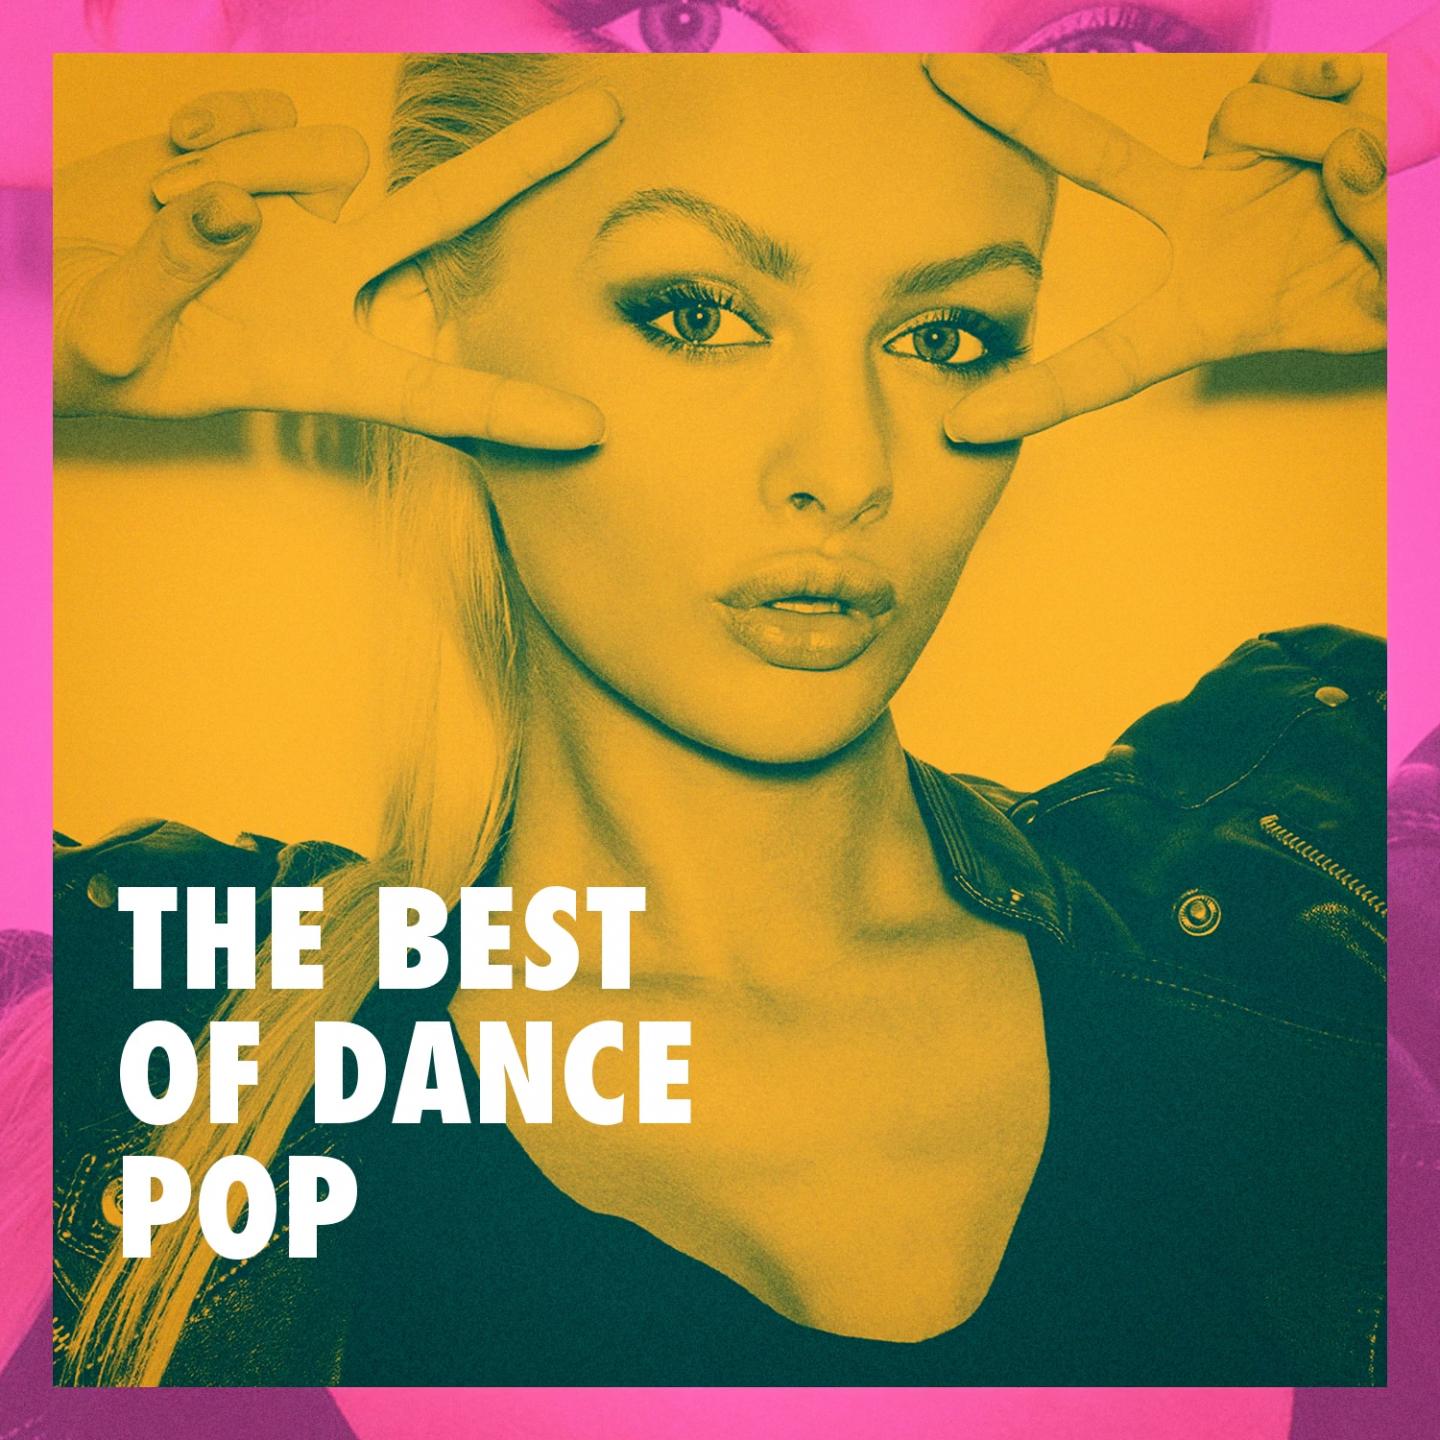 The Best of Dance Pop